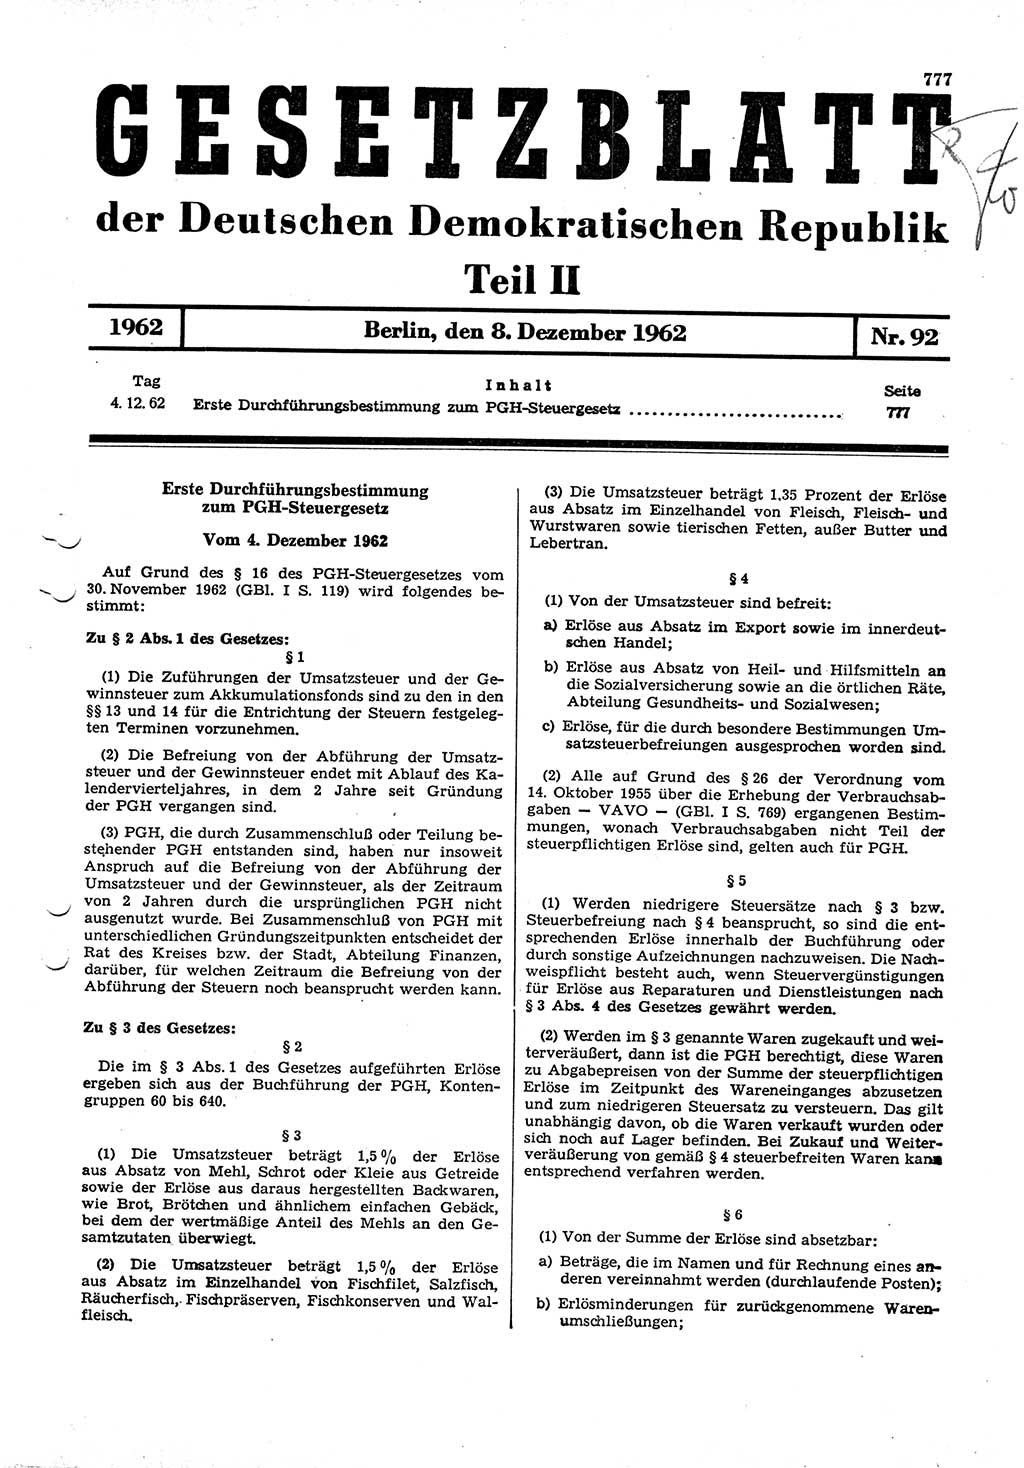 Gesetzblatt (GBl.) der Deutschen Demokratischen Republik (DDR) Teil ⅠⅠ 1962, Seite 777 (GBl. DDR ⅠⅠ 1962, S. 777)